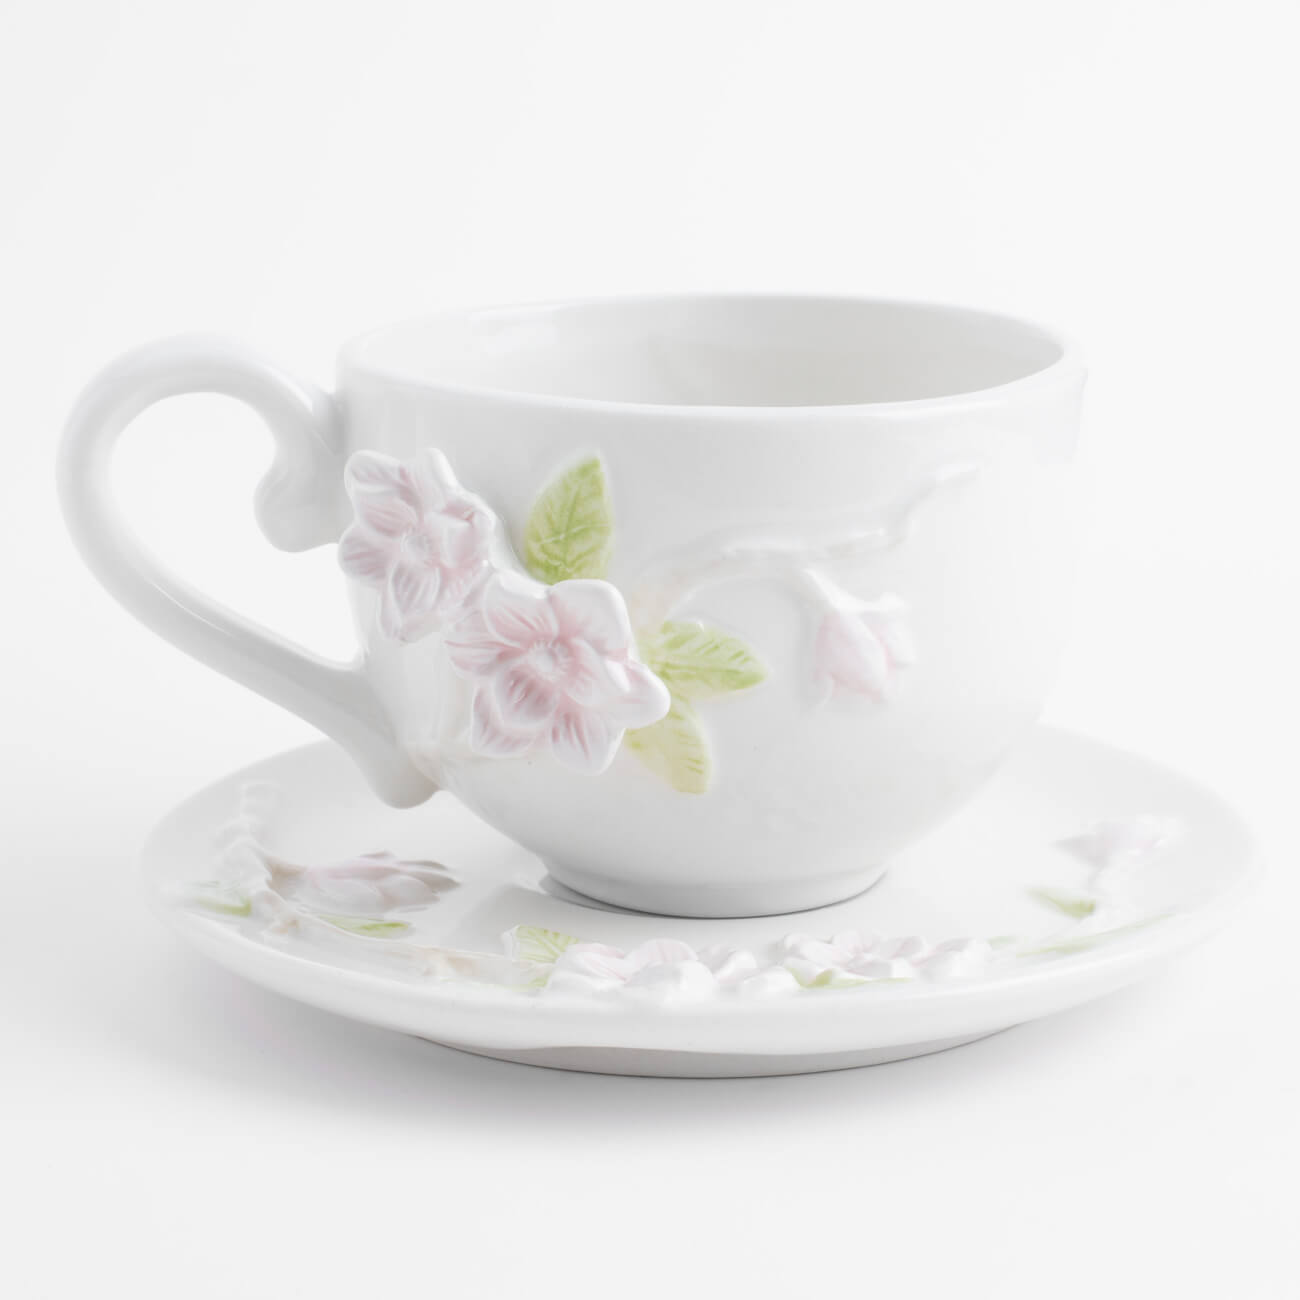 Пара чайная для завтрака, 1 перс, 2 пр, 420 мл, керамика, молочная, Цветы магнолии, Magnolia - фото 1